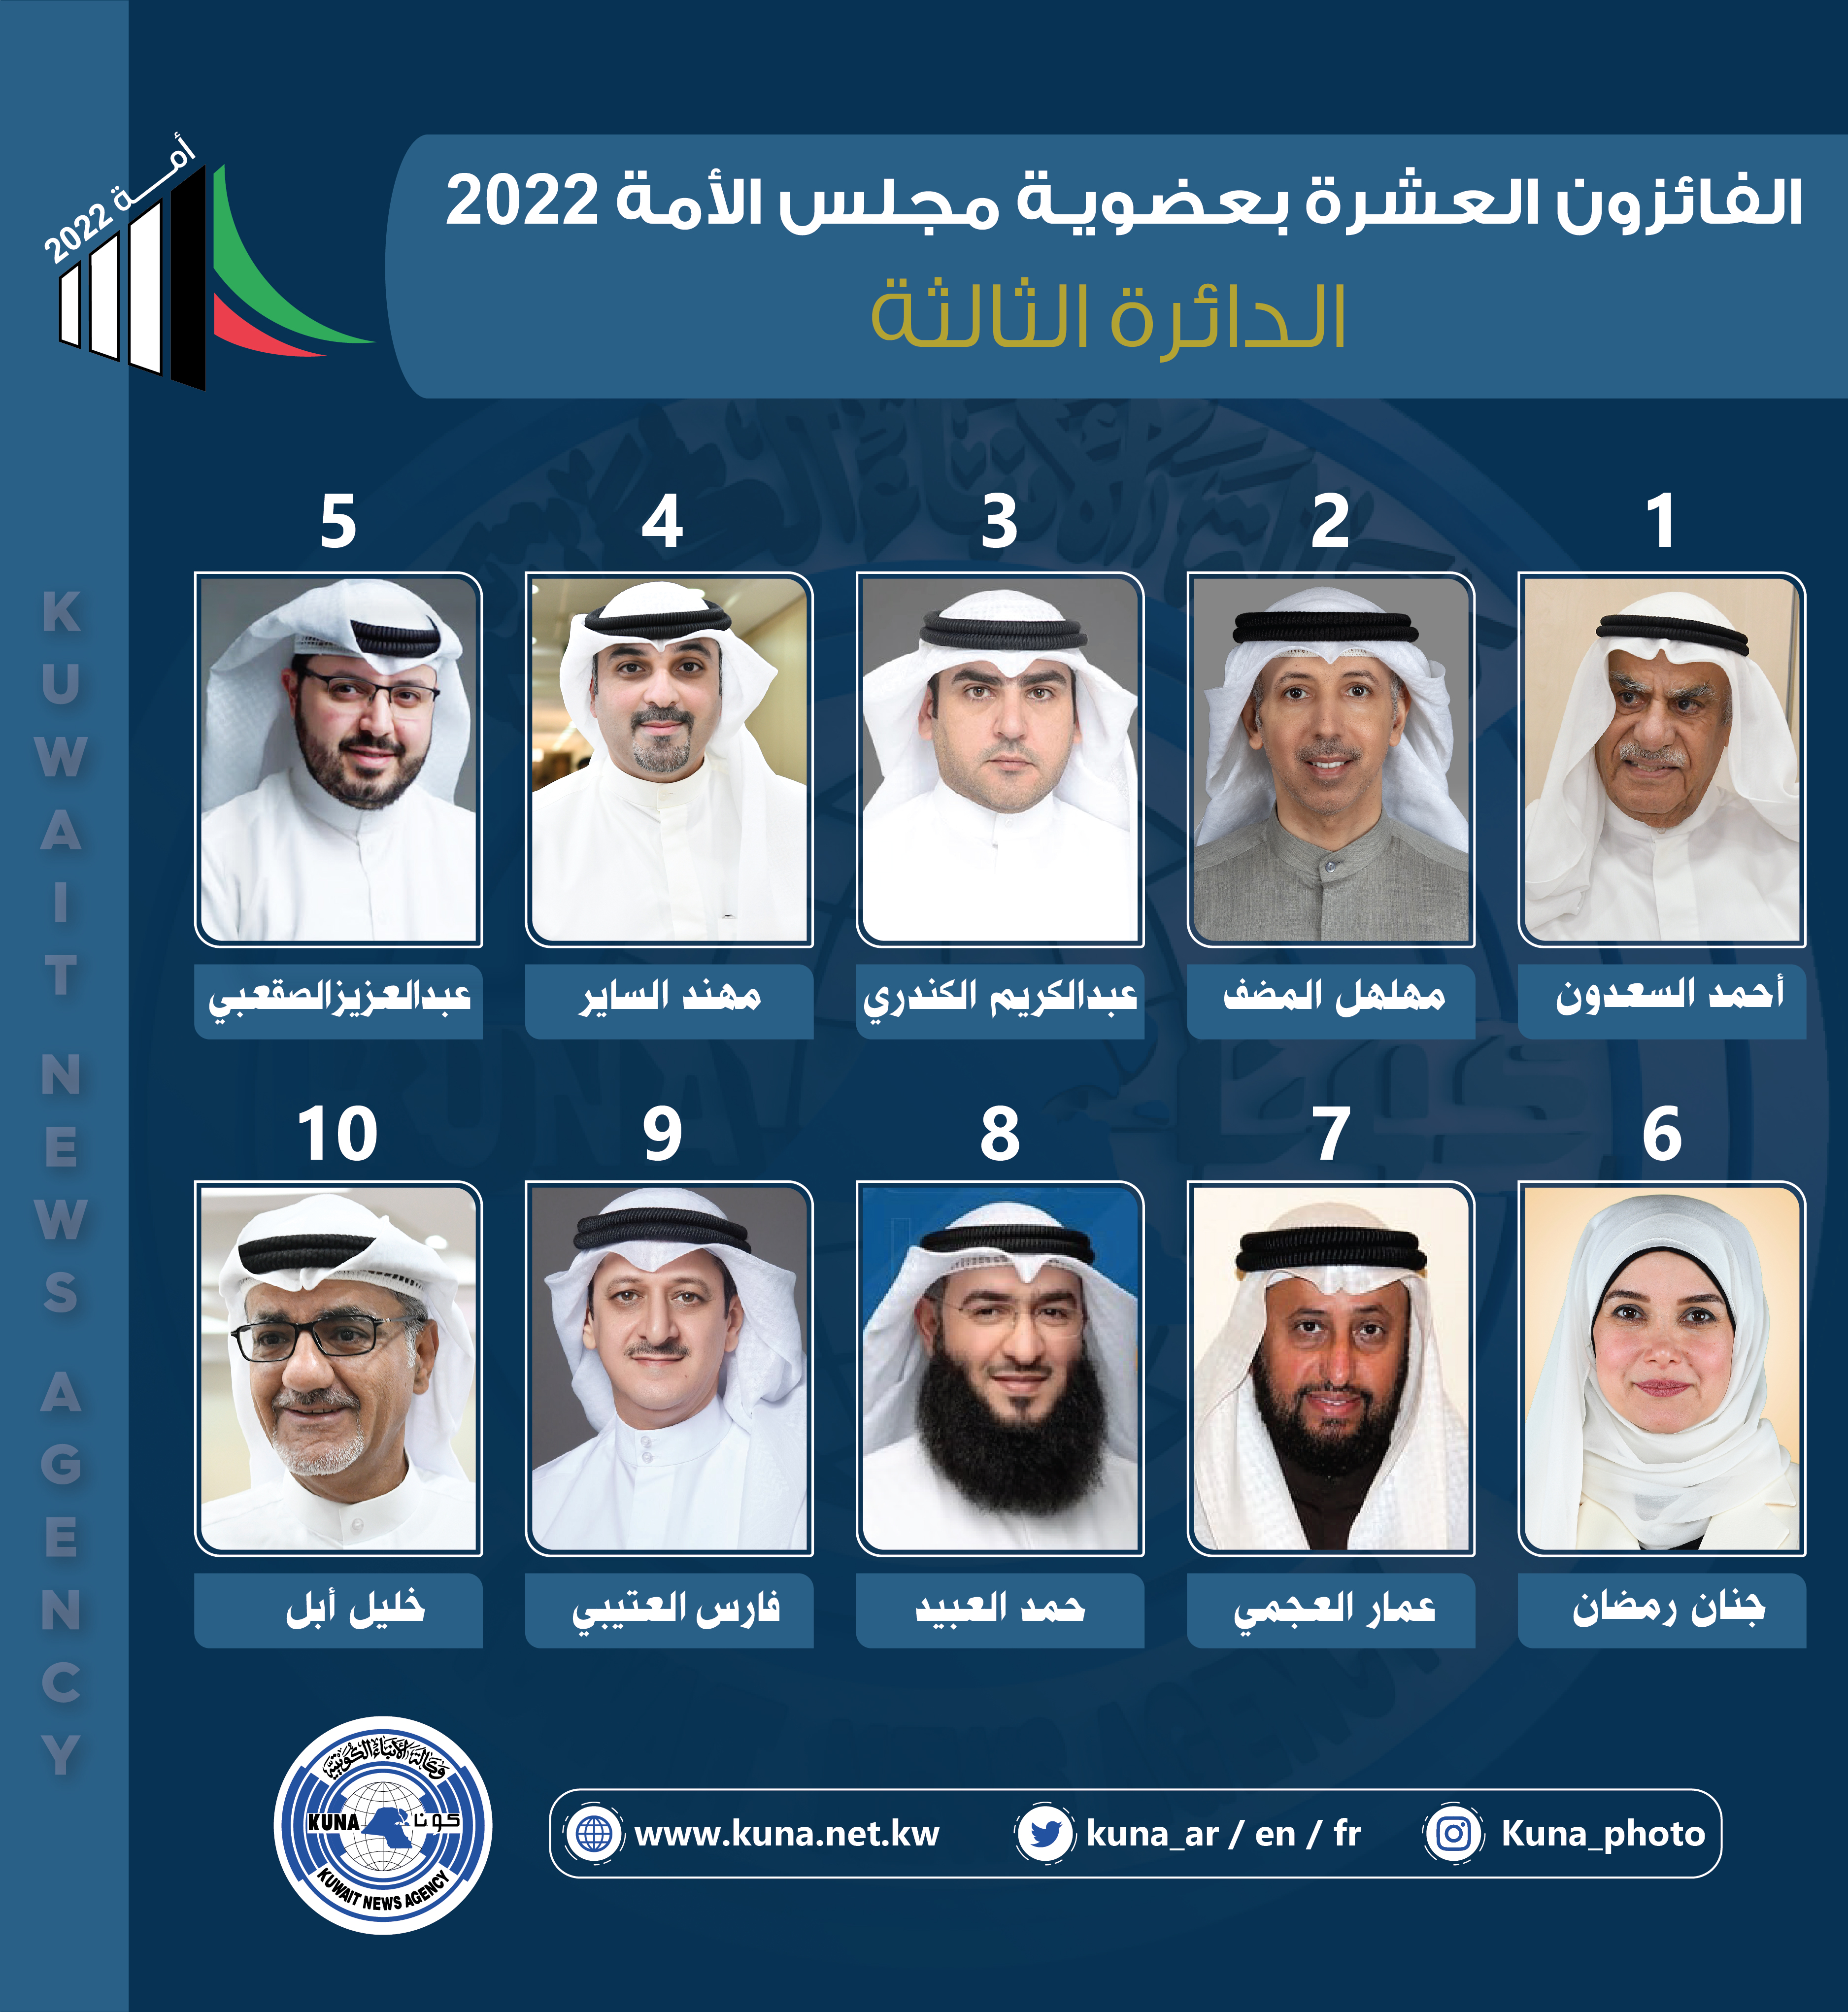 أسماء الفائزين بعضوية مجلس الأمة الكويتي (أمة 2022) عن الدائرة الانتخابية الثالثة